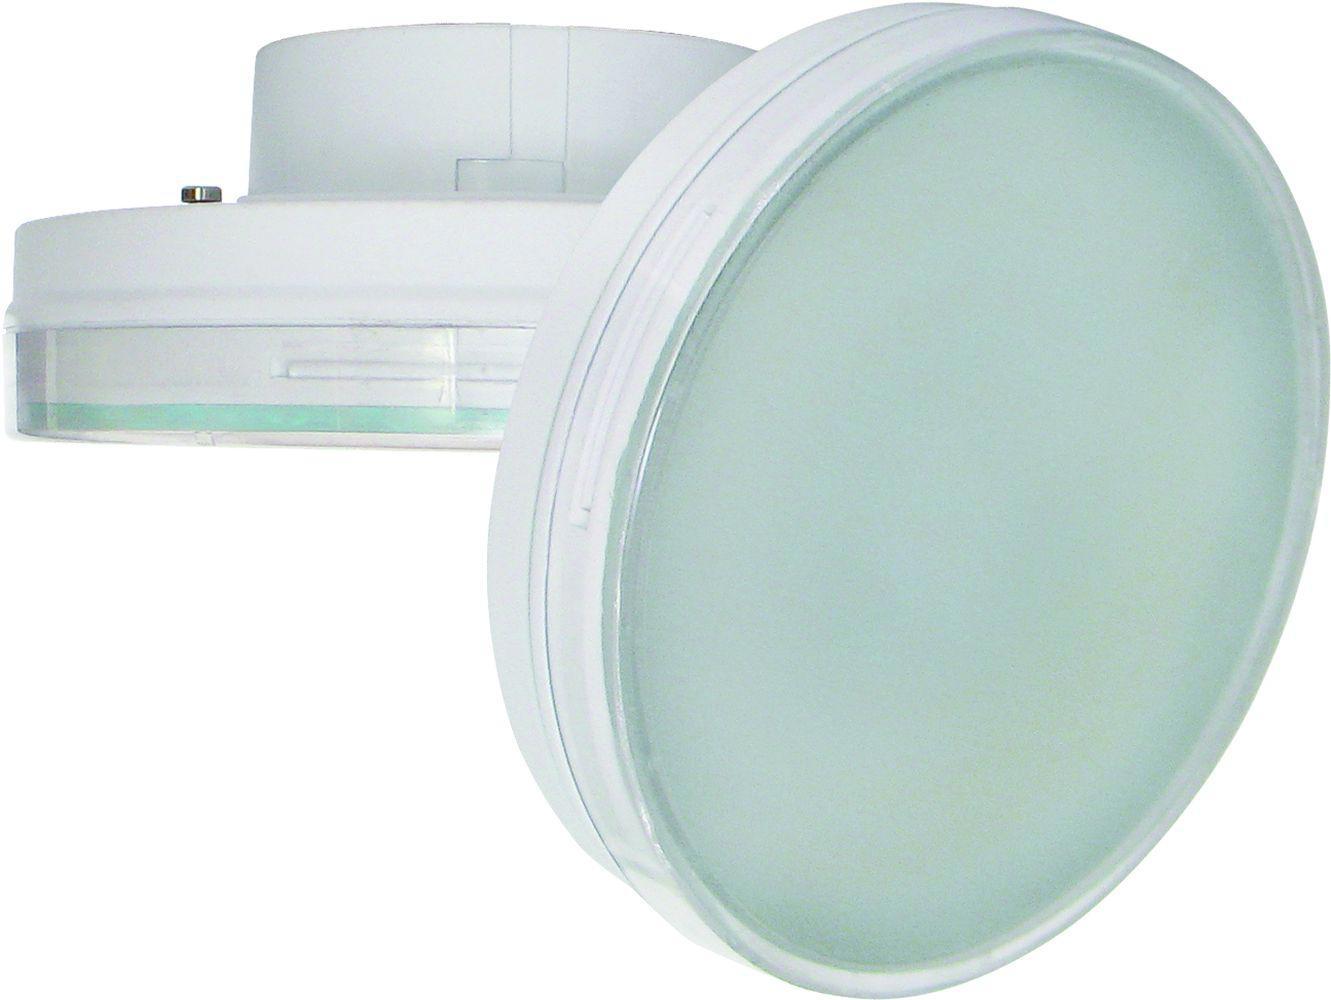 90121337 Лампа светодиодная T7MD10ELC стандарт GX70 220 В 10 Вт диск матовая 800 Лм холодный белый свет STLM-0112478 ECOLA